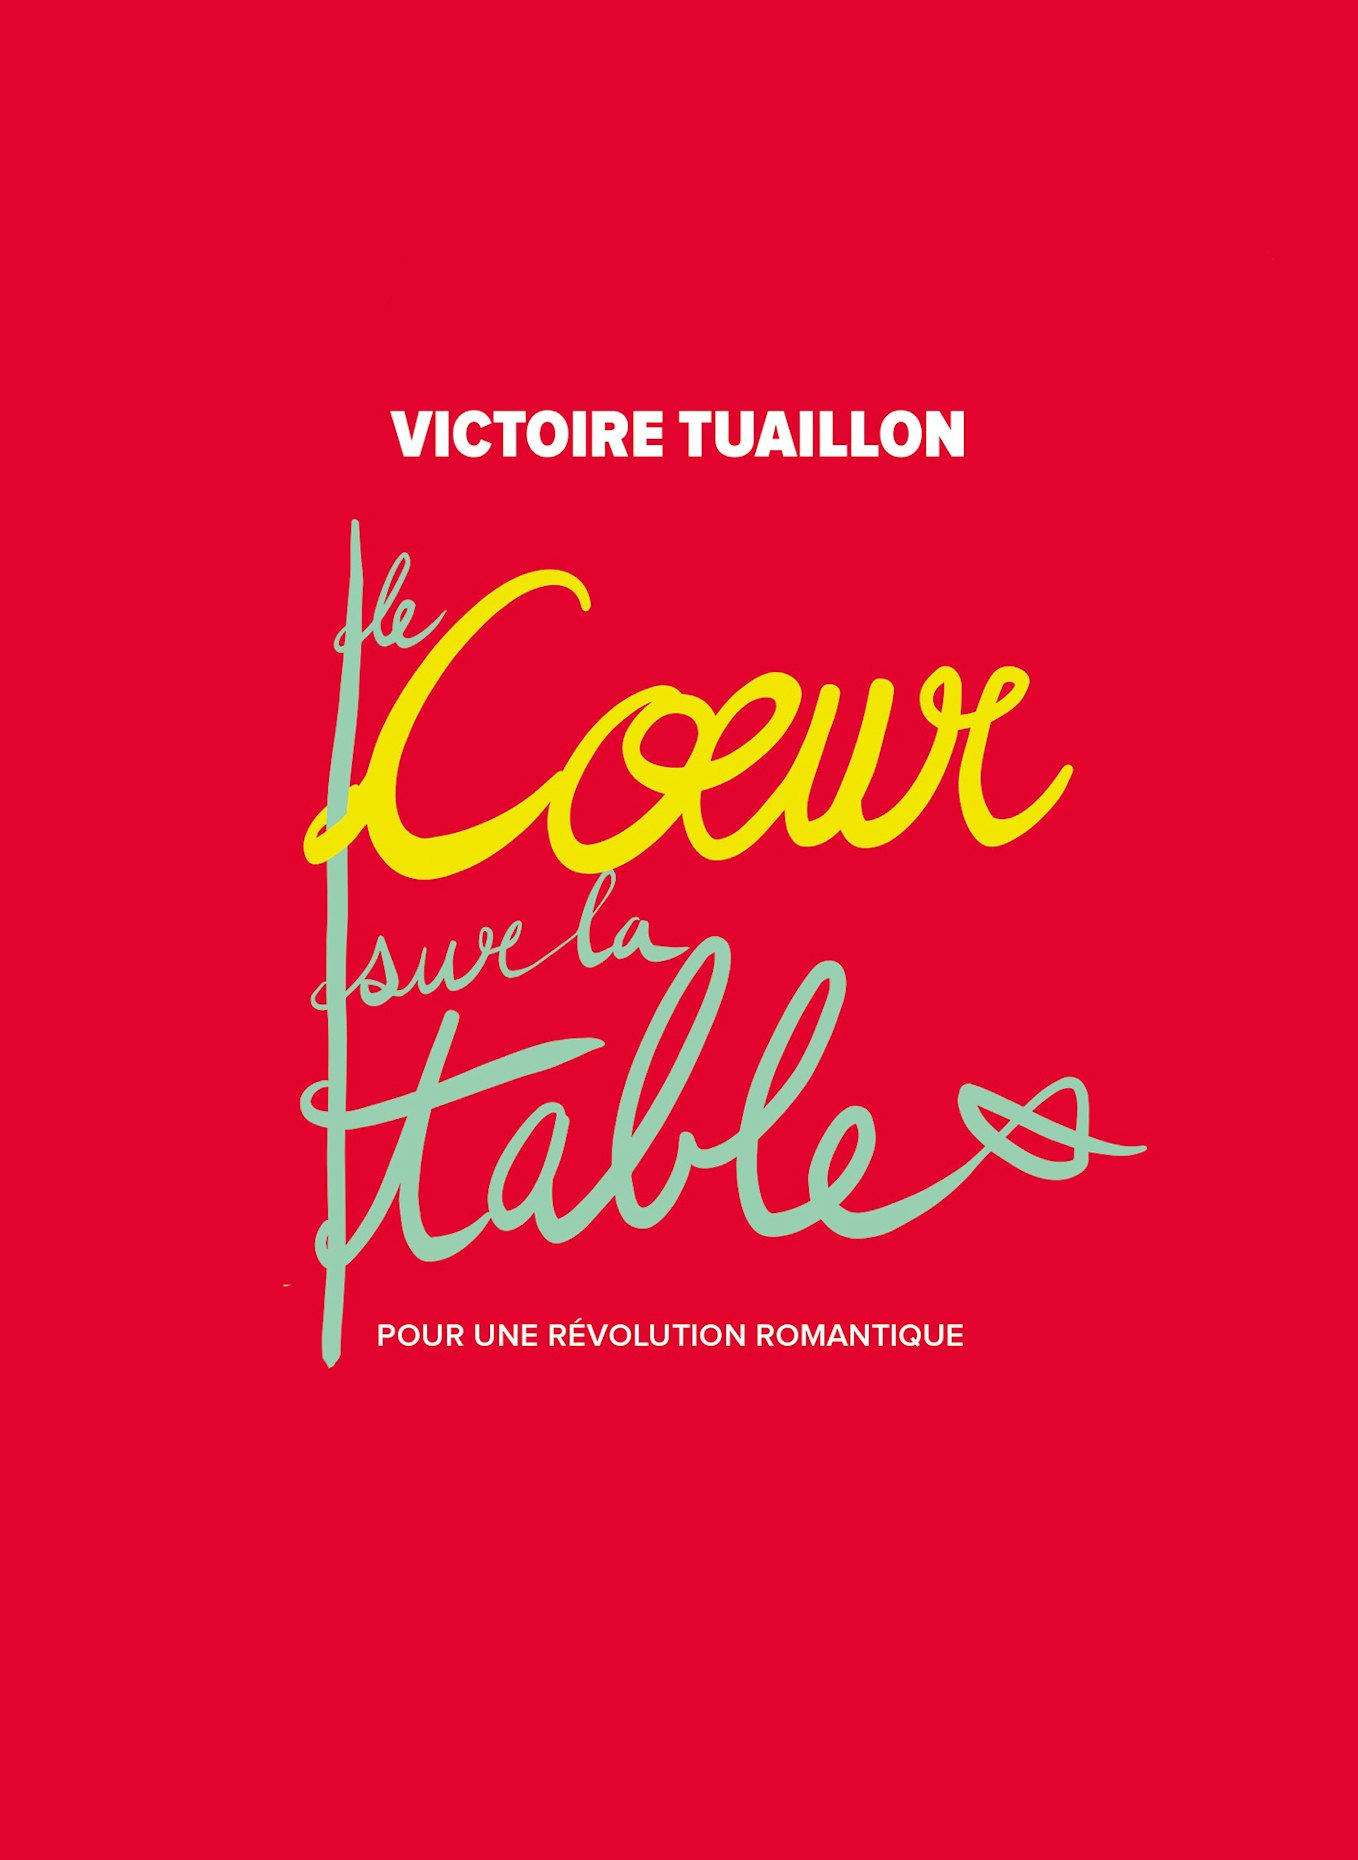 Le cœur sur la table - Victoire Tuaillon